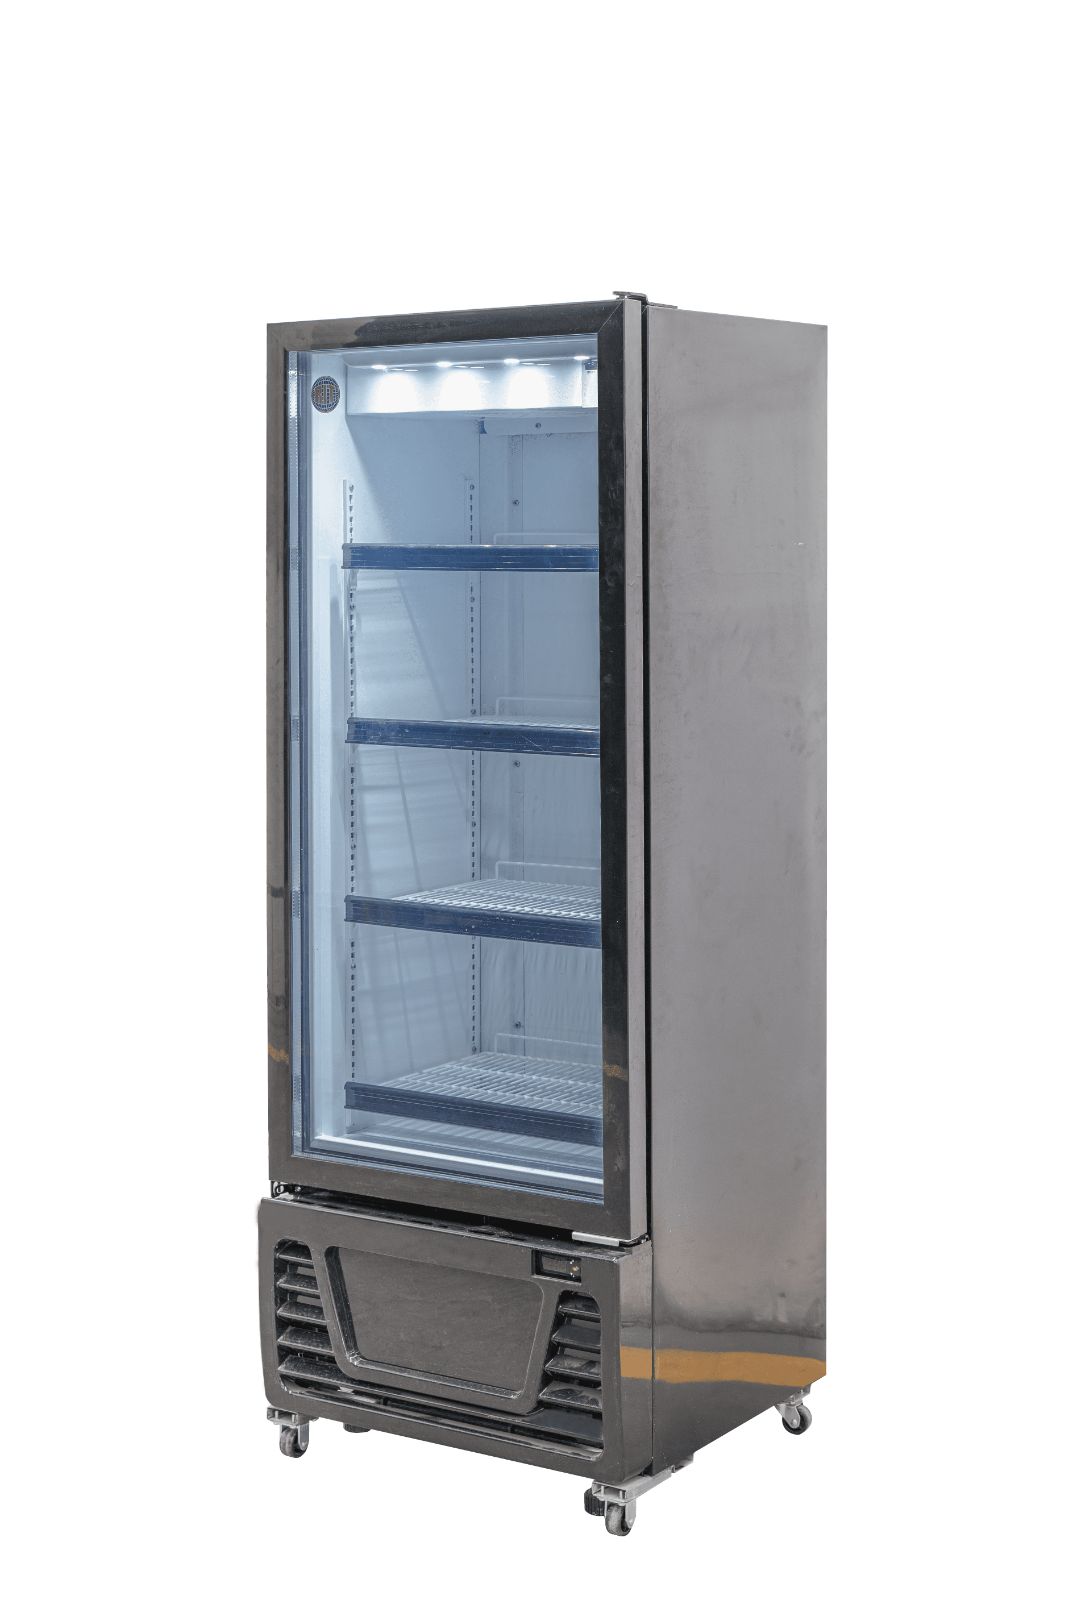 RITS-214 RITタテ型冷蔵ショーケース【新品 保証付】JCM 保冷庫 シグマ・リテールテック株式会社 メルカリ